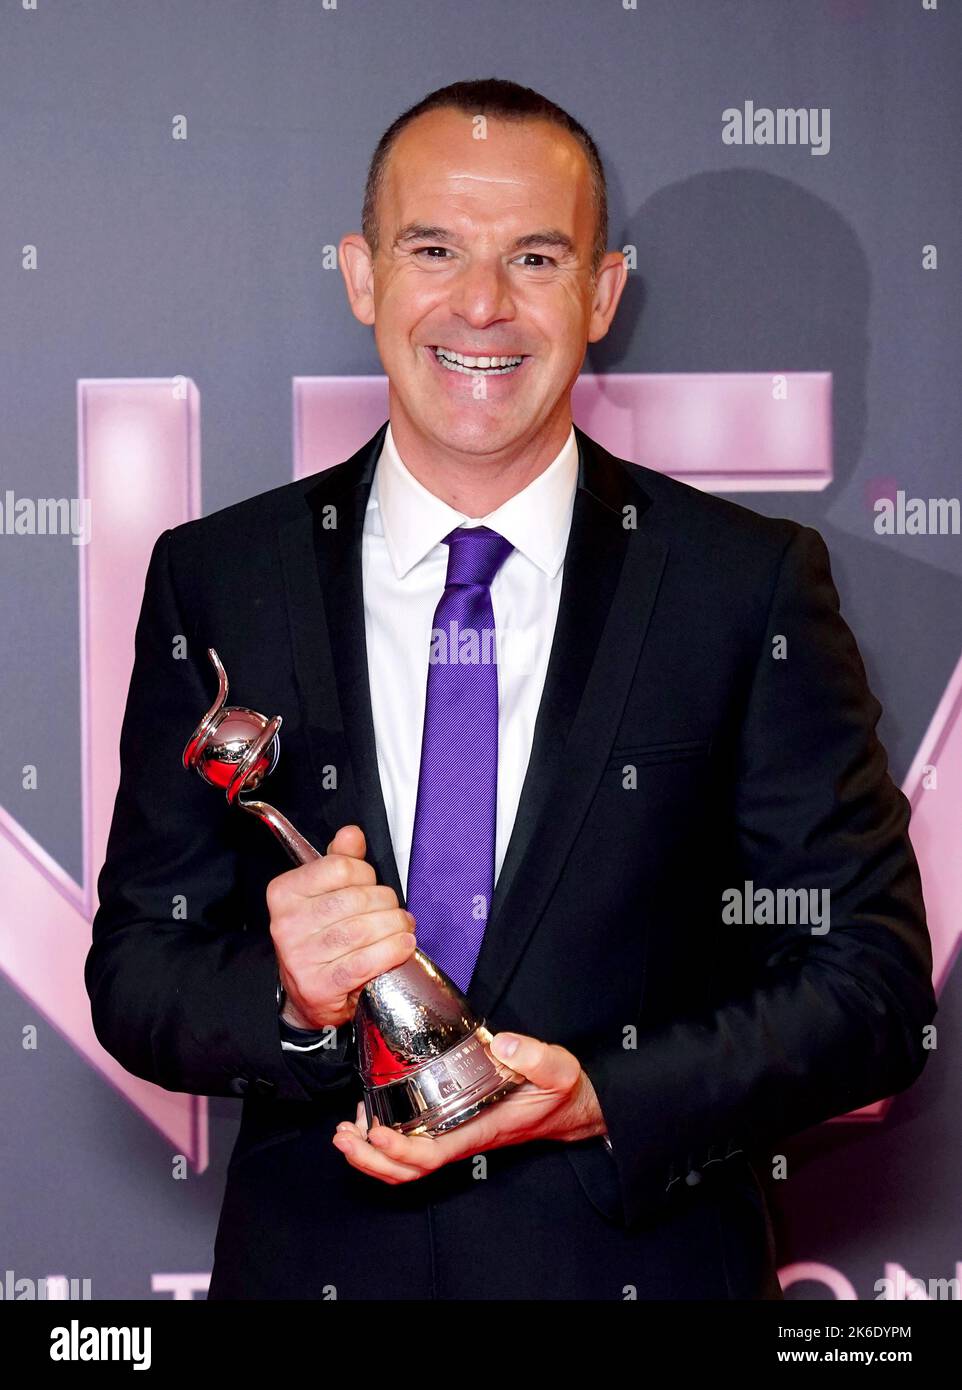 Martin Lewis dans la salle de presse après avoir remporté le prix TV Expert lors des National Television Awards 2022 qui se sont tenus à l'OVO Arena Wembley à Londres. Date de la photo: Jeudi 13 octobre 2022. Banque D'Images